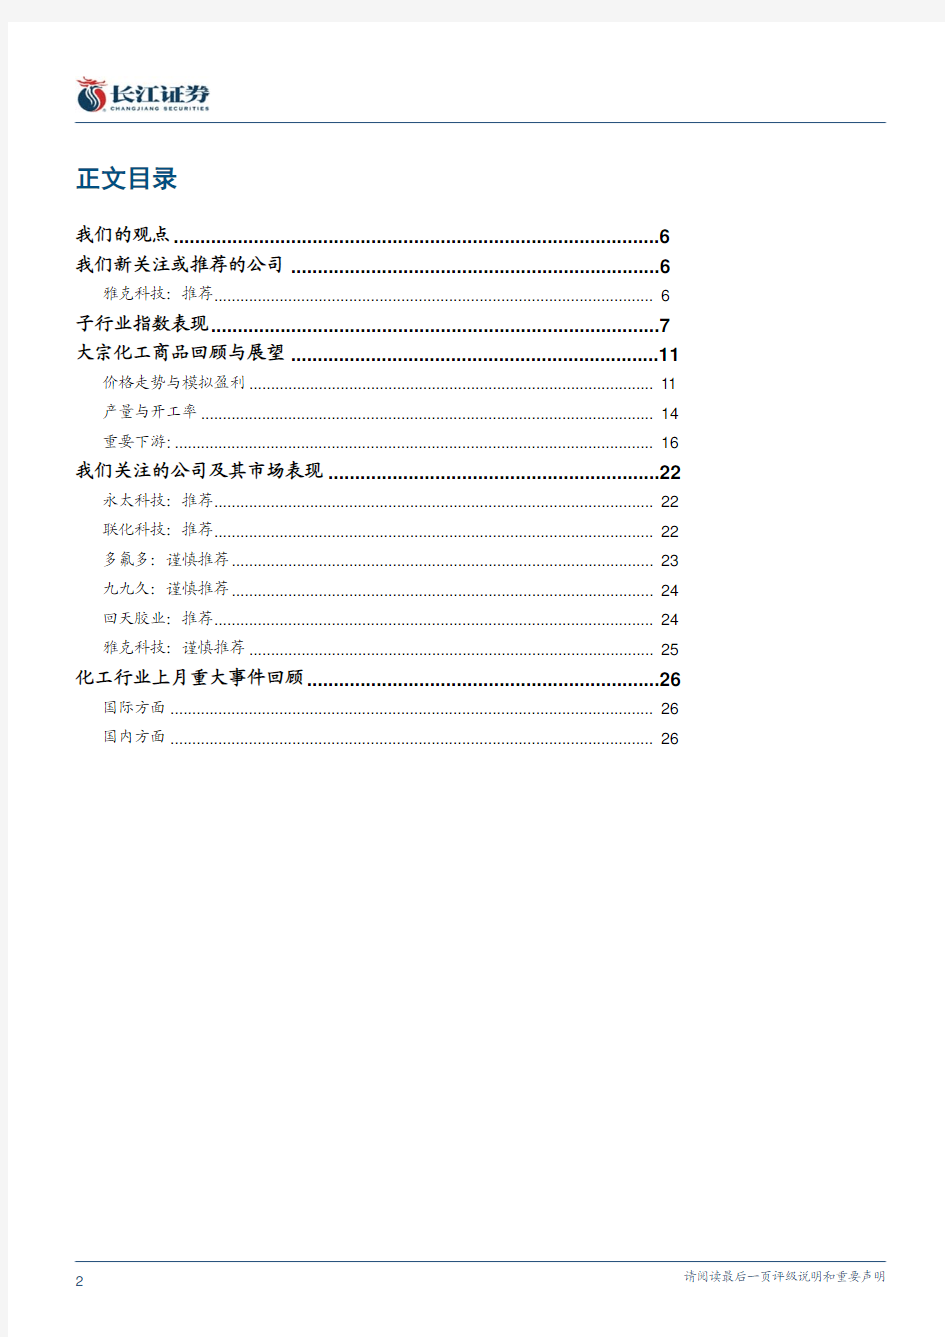 化工行业研究报告：长江证券-化工行业：行业性机会来临-101102